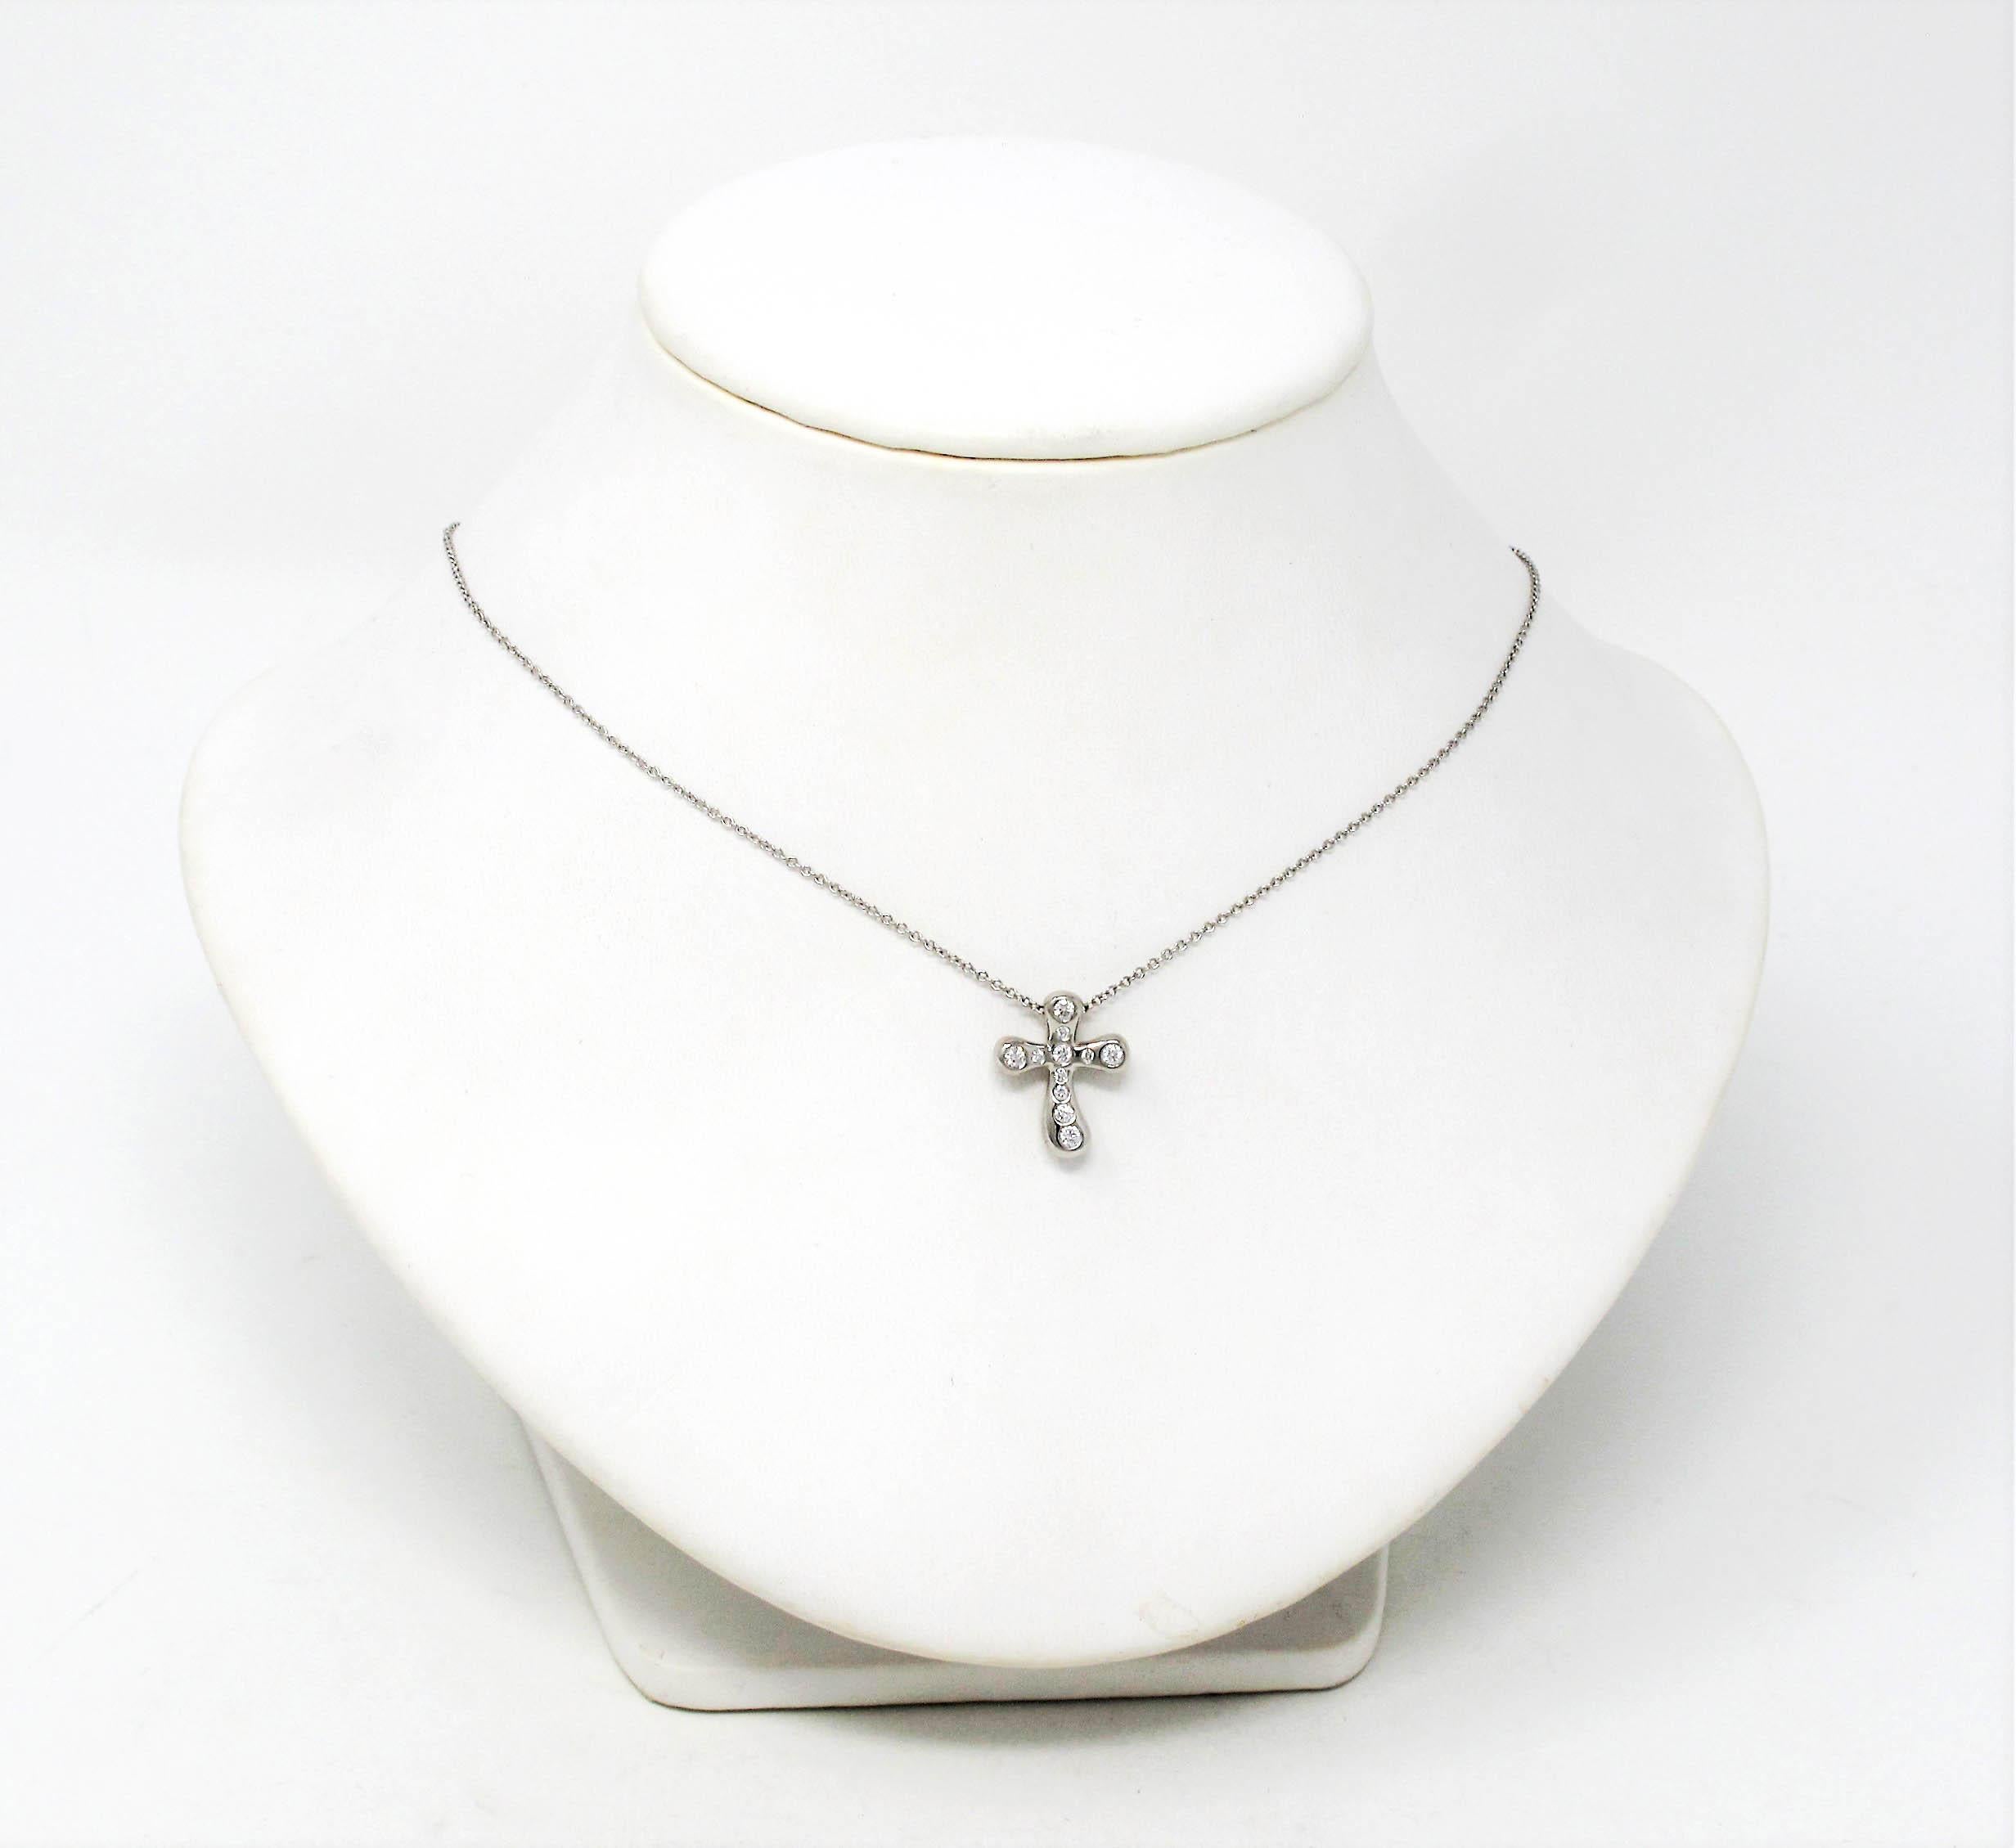 Superbe collier pendentif croix en diamant modernisé, créé par Elsa Peretti pour Tiffany & Co. Le délicat motif de la croix est orné de diamants Tiffany scintillants, tandis que la chaîne en platine finement tissée épouse délicatement le cou. Ce